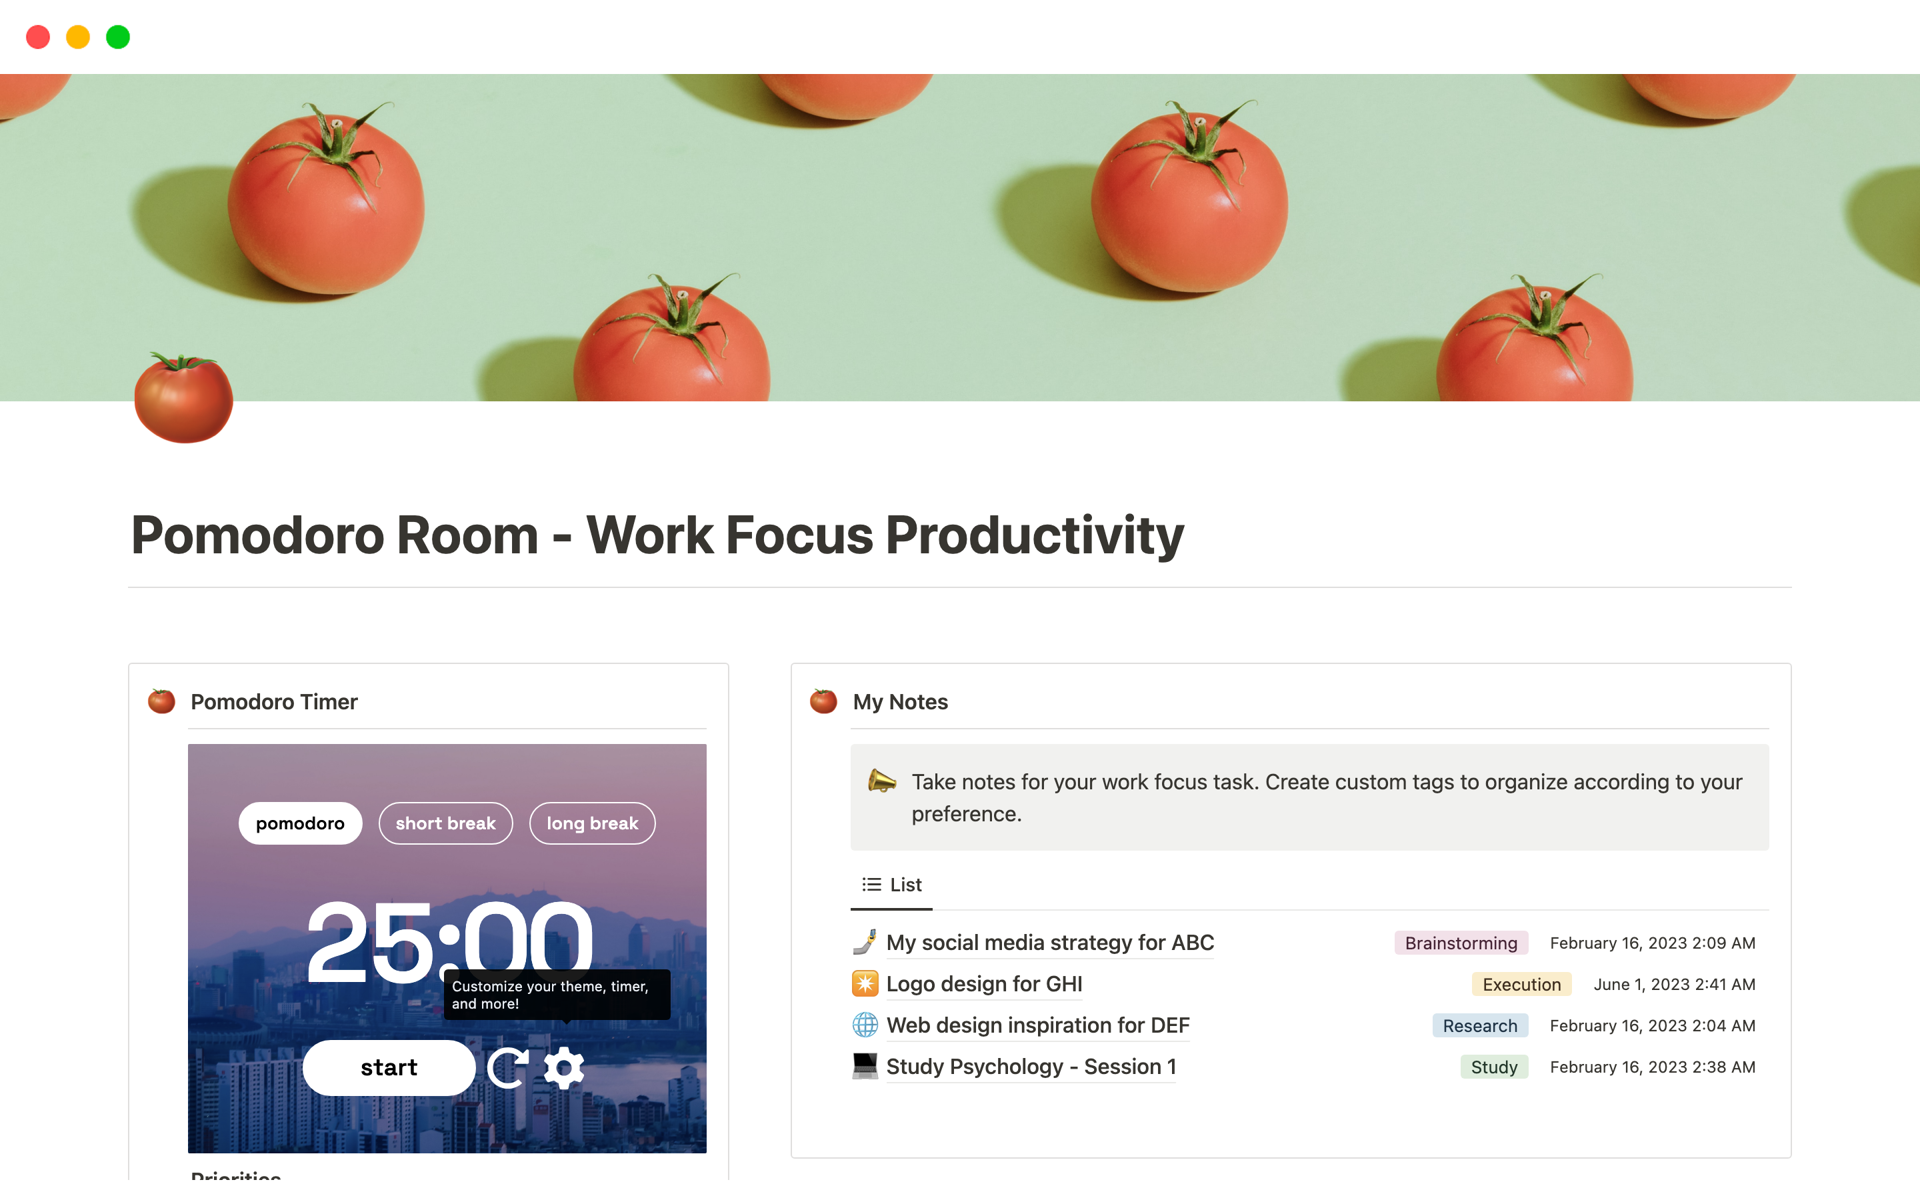 Uma prévia do modelo para Pomodoro Room - Work Focus Productivity